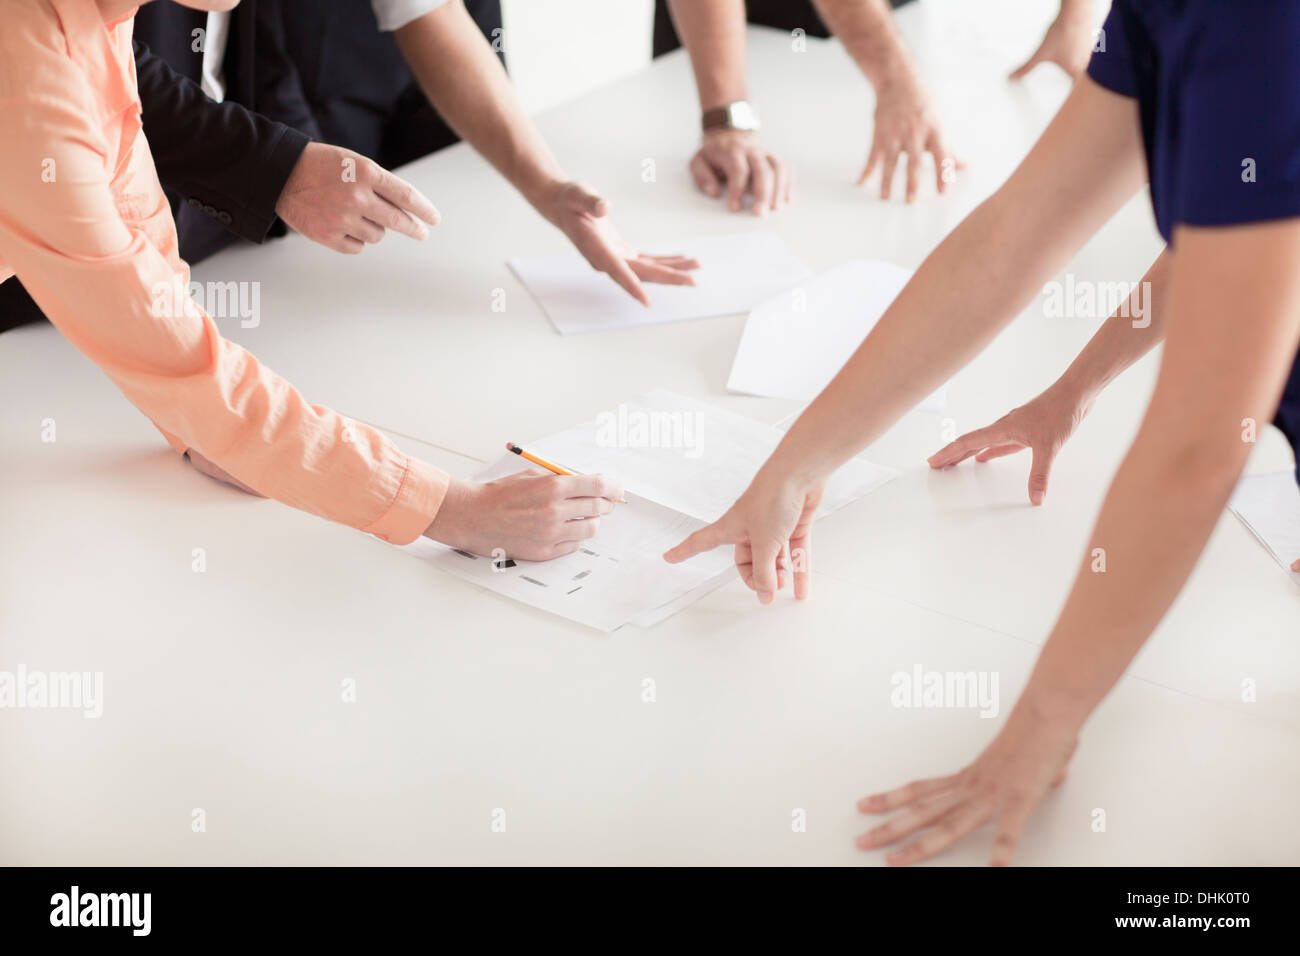 Nahaufnahme der Arme und Hände von Geschäftsleuten im Büro mit einem Business-meeting Stockfoto